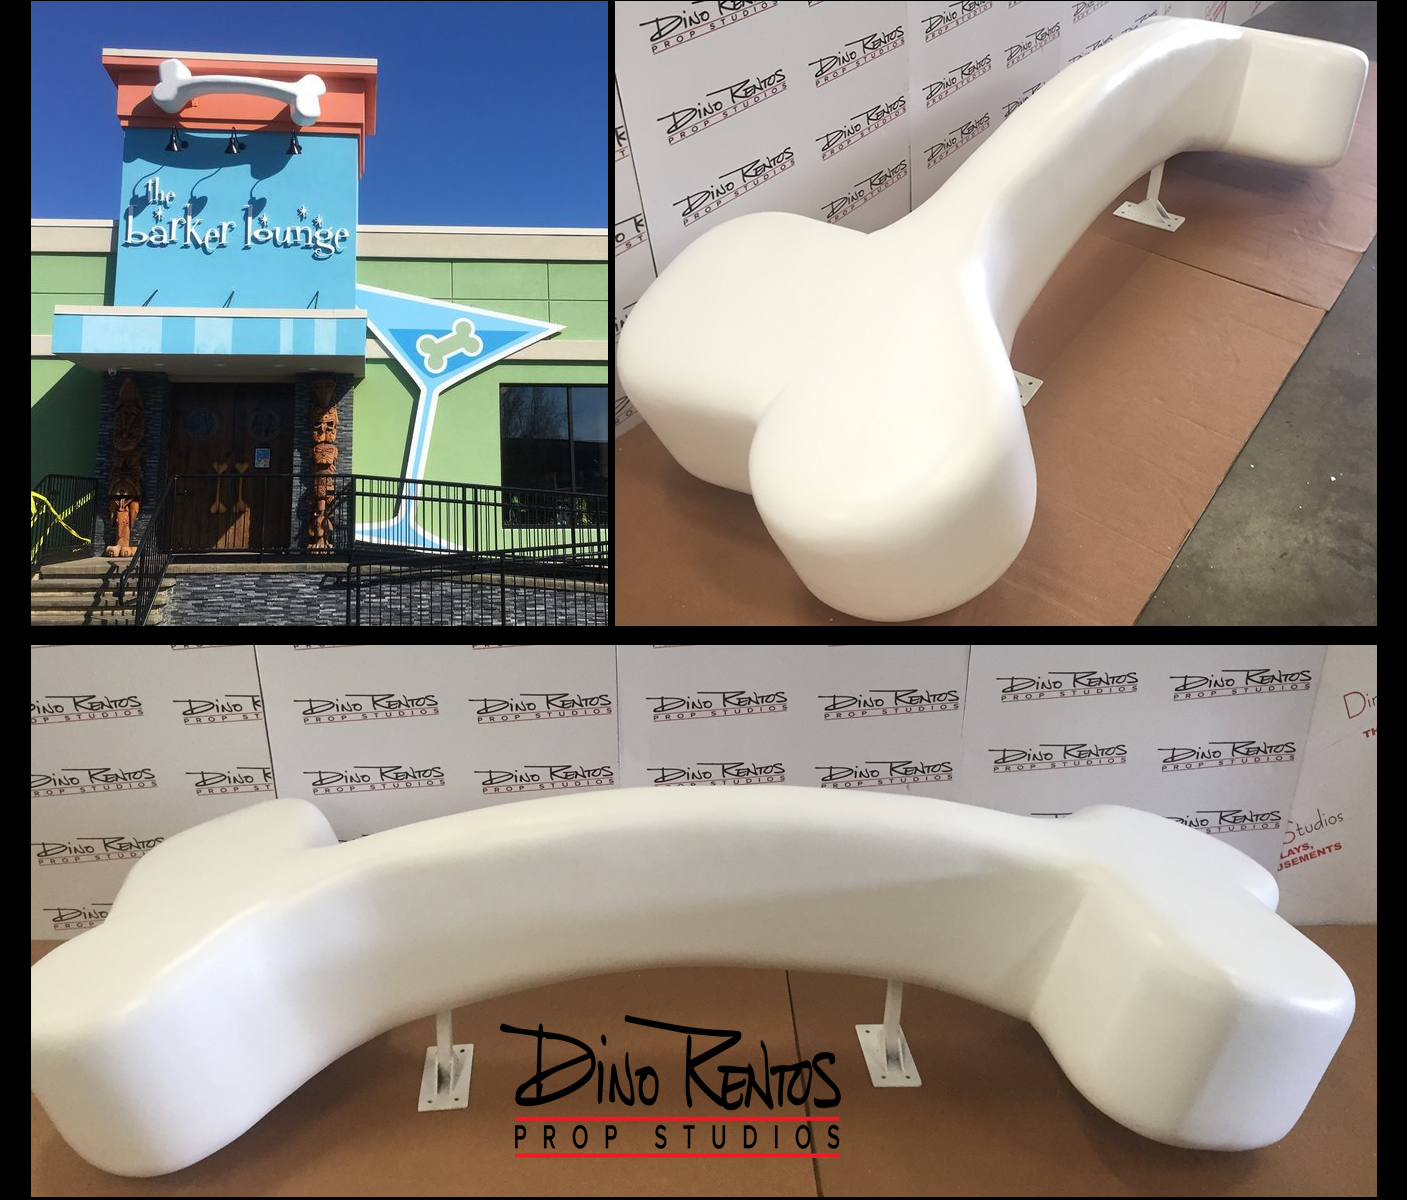 Large Foam Dog Bone for exterior sign Barker Lounge display prop retail signage